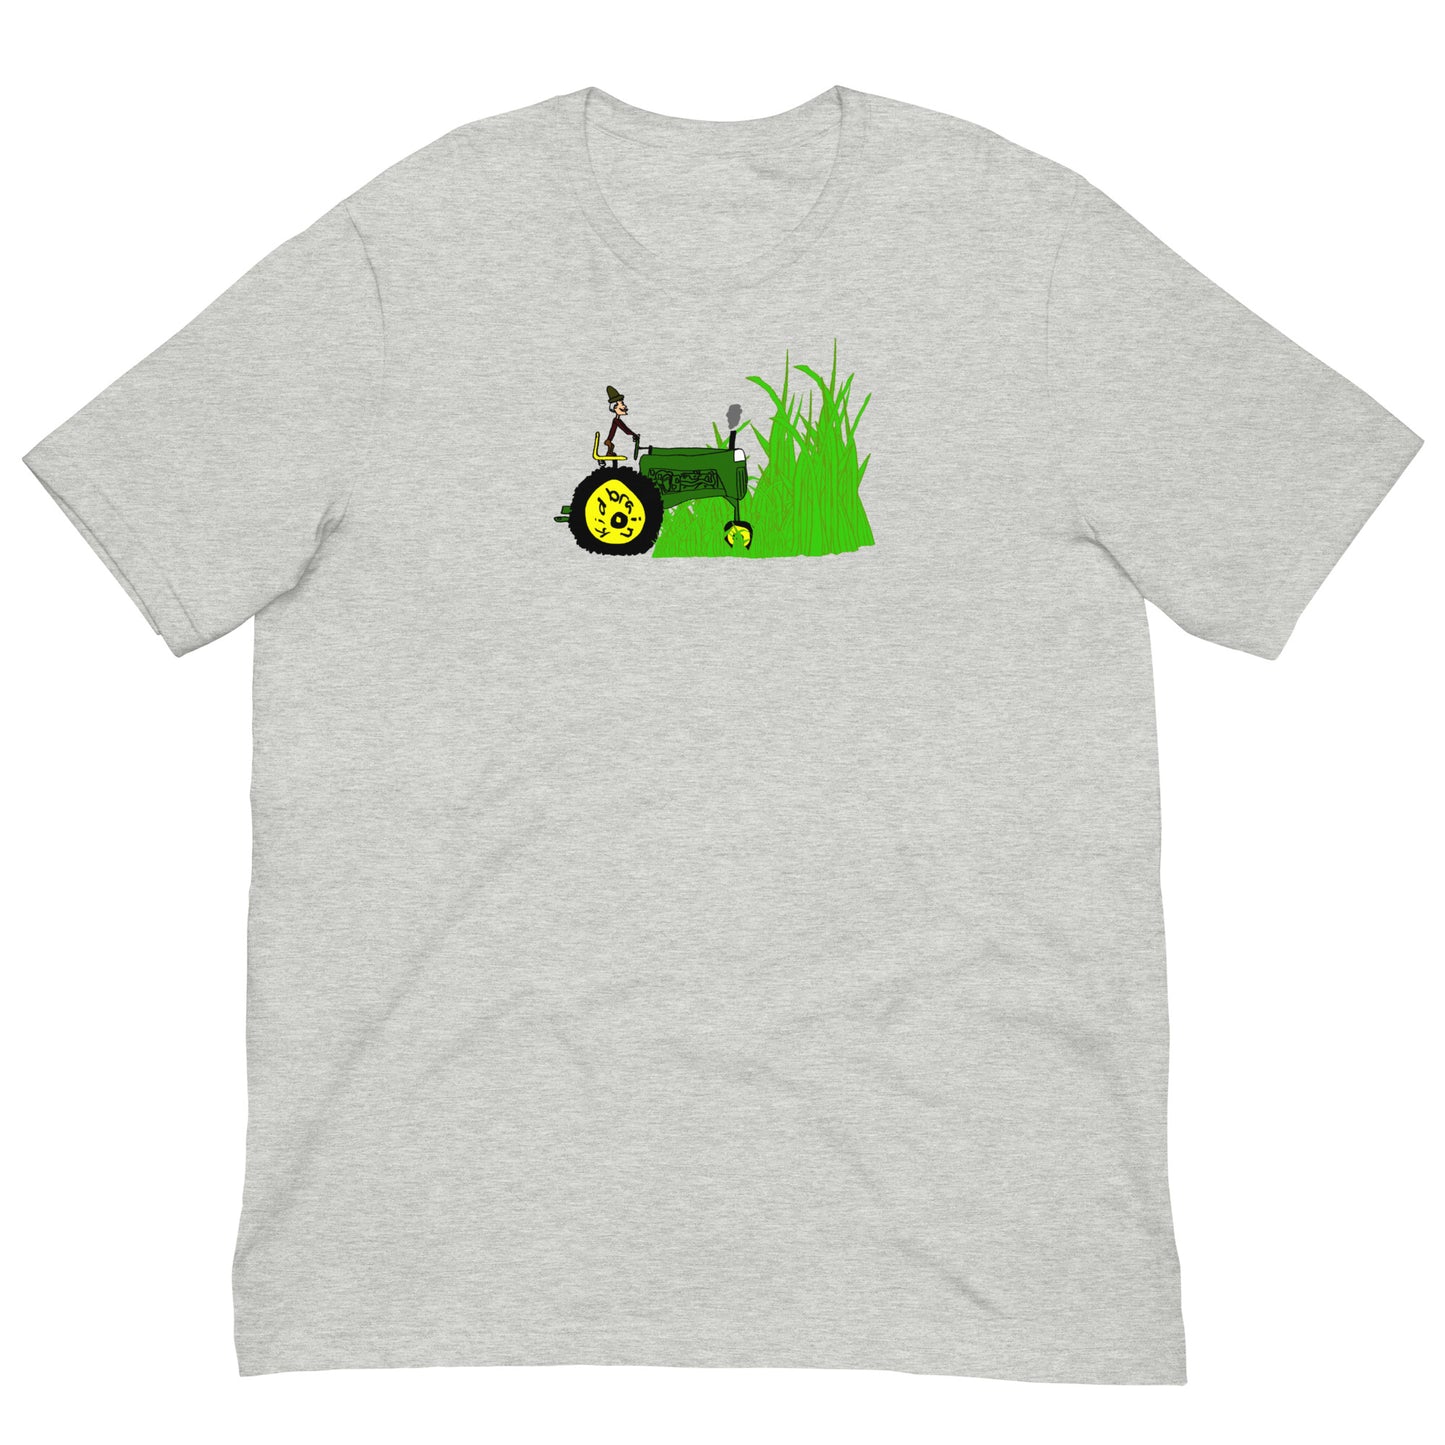 You Cut The Grass t-shirt